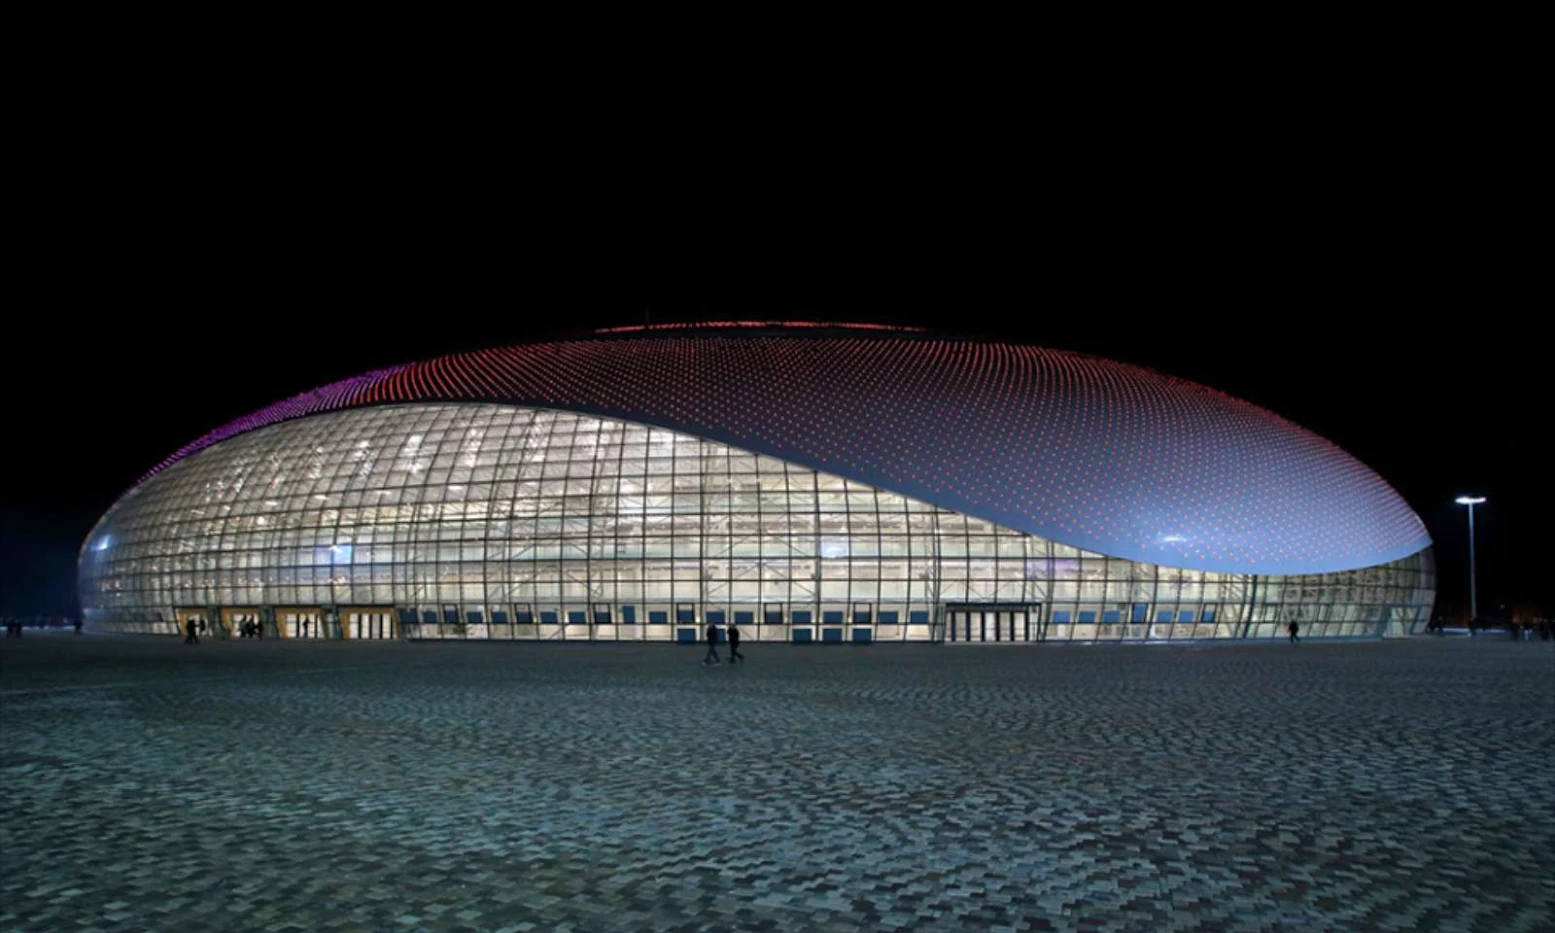 Sochi 2014 Olympics Architecture Bolshoy Ice Dome